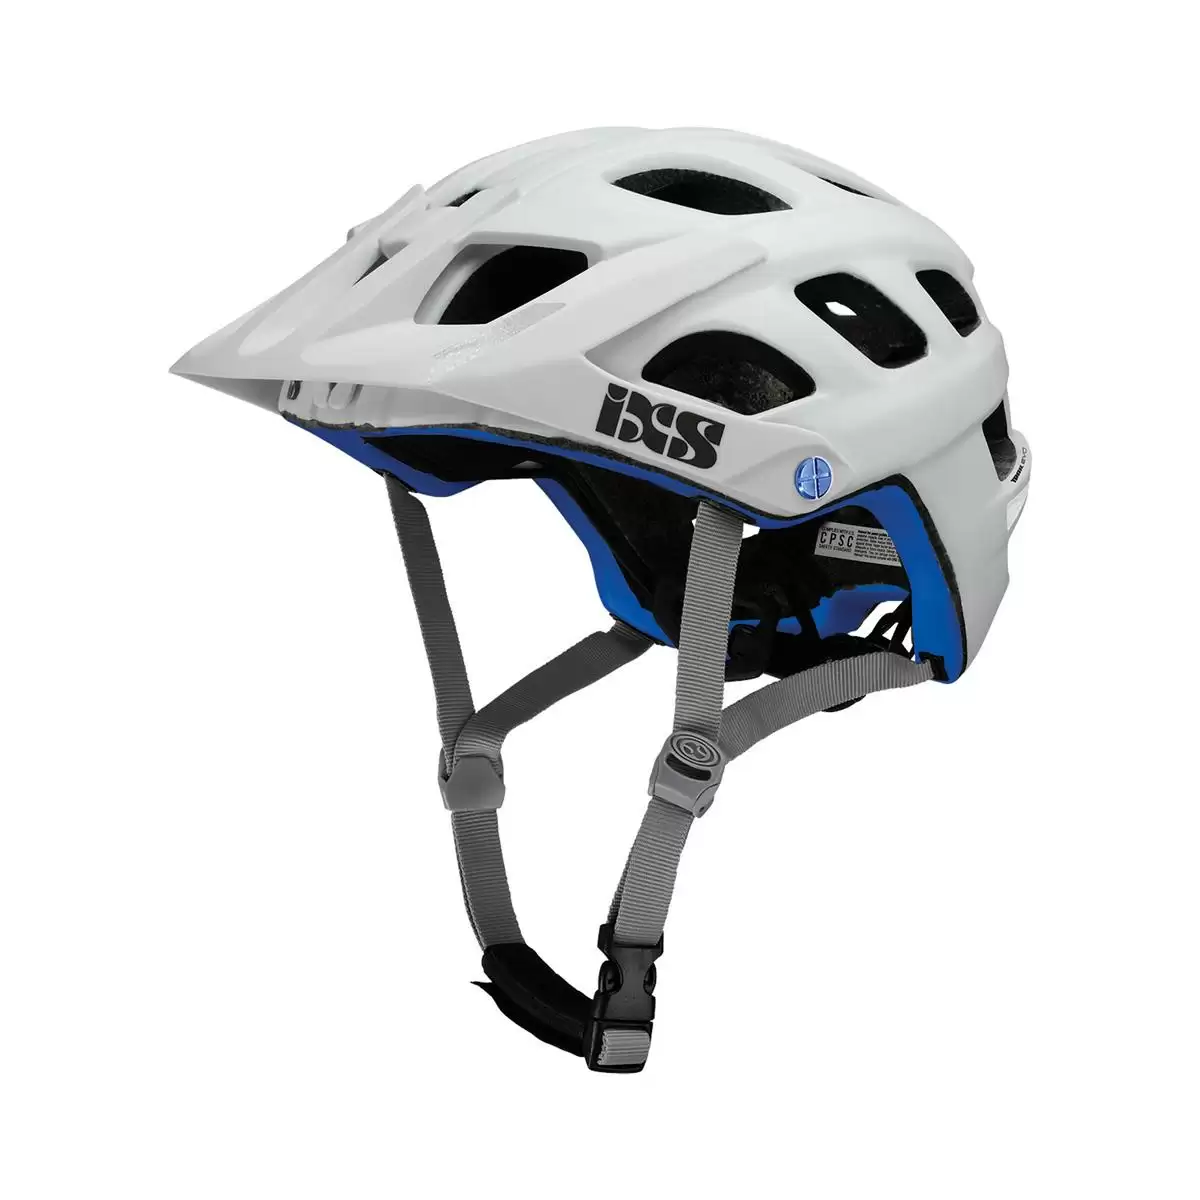 Henduro Helmet Trail Evo E-Bike Edition White Size XS/S (49-54cm) - image